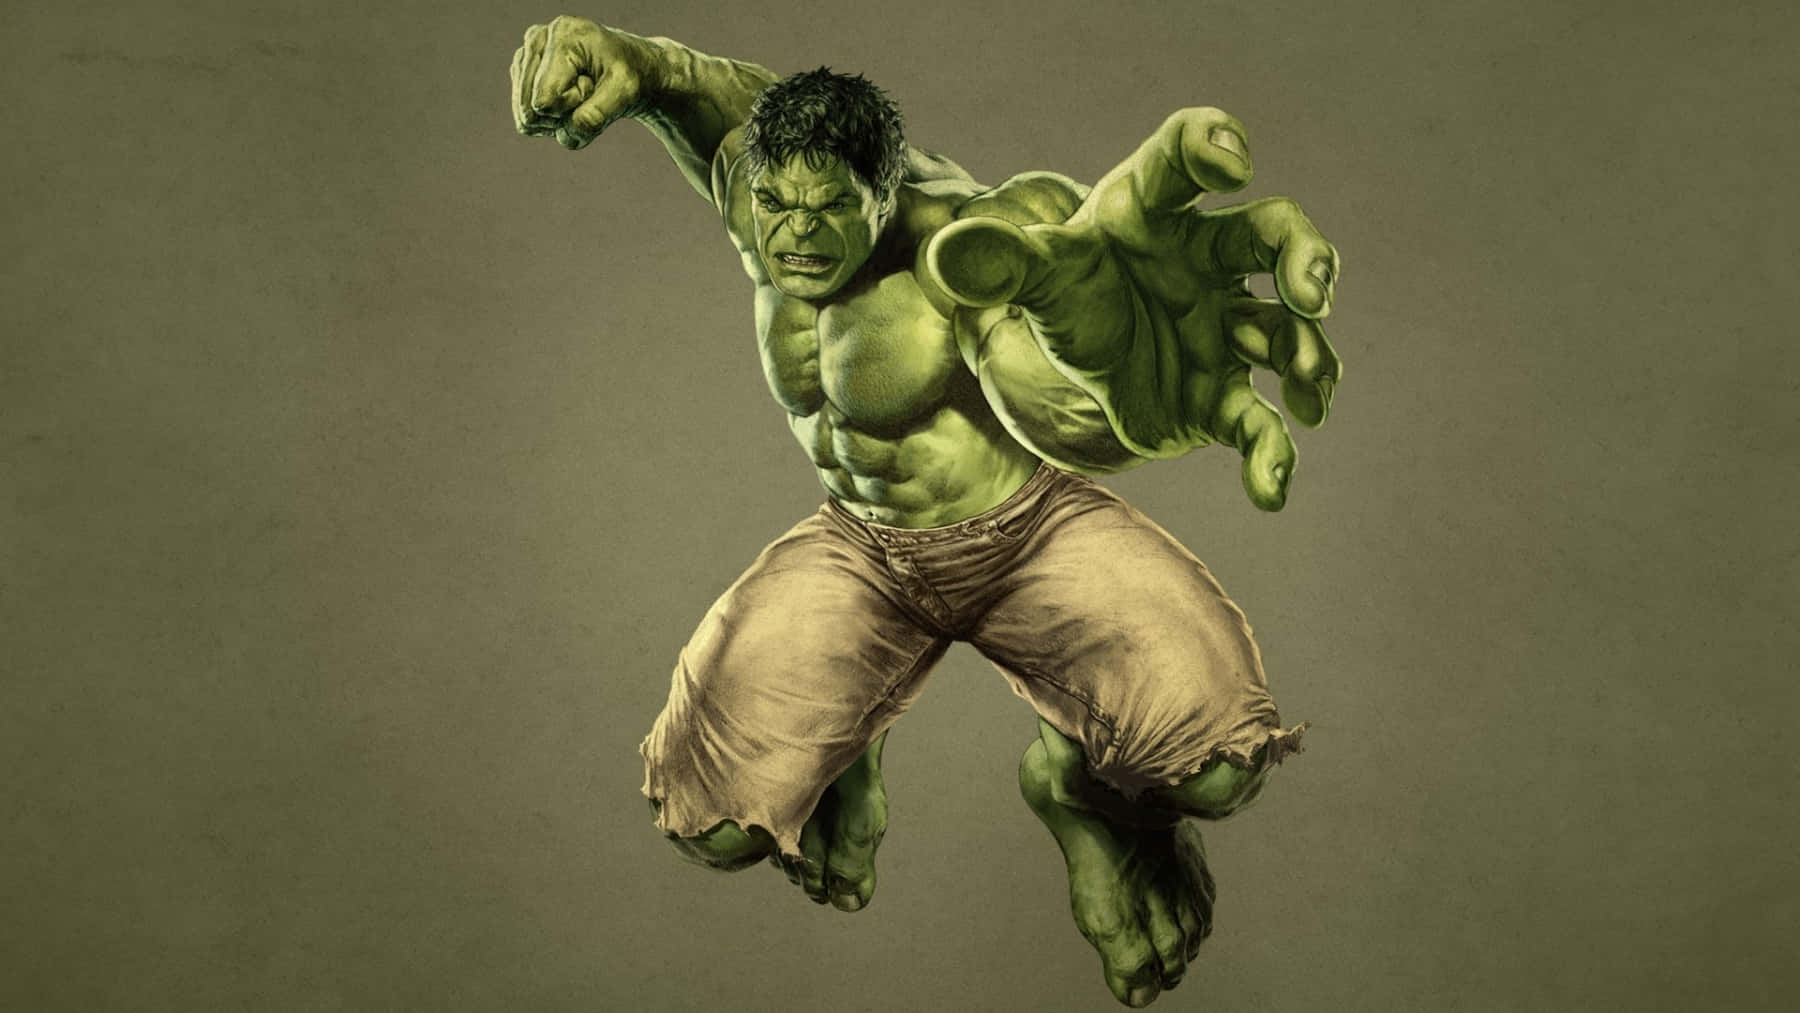 Fascinerendekunst Af Den Vrede Grønne Kæmpe, Hulk.